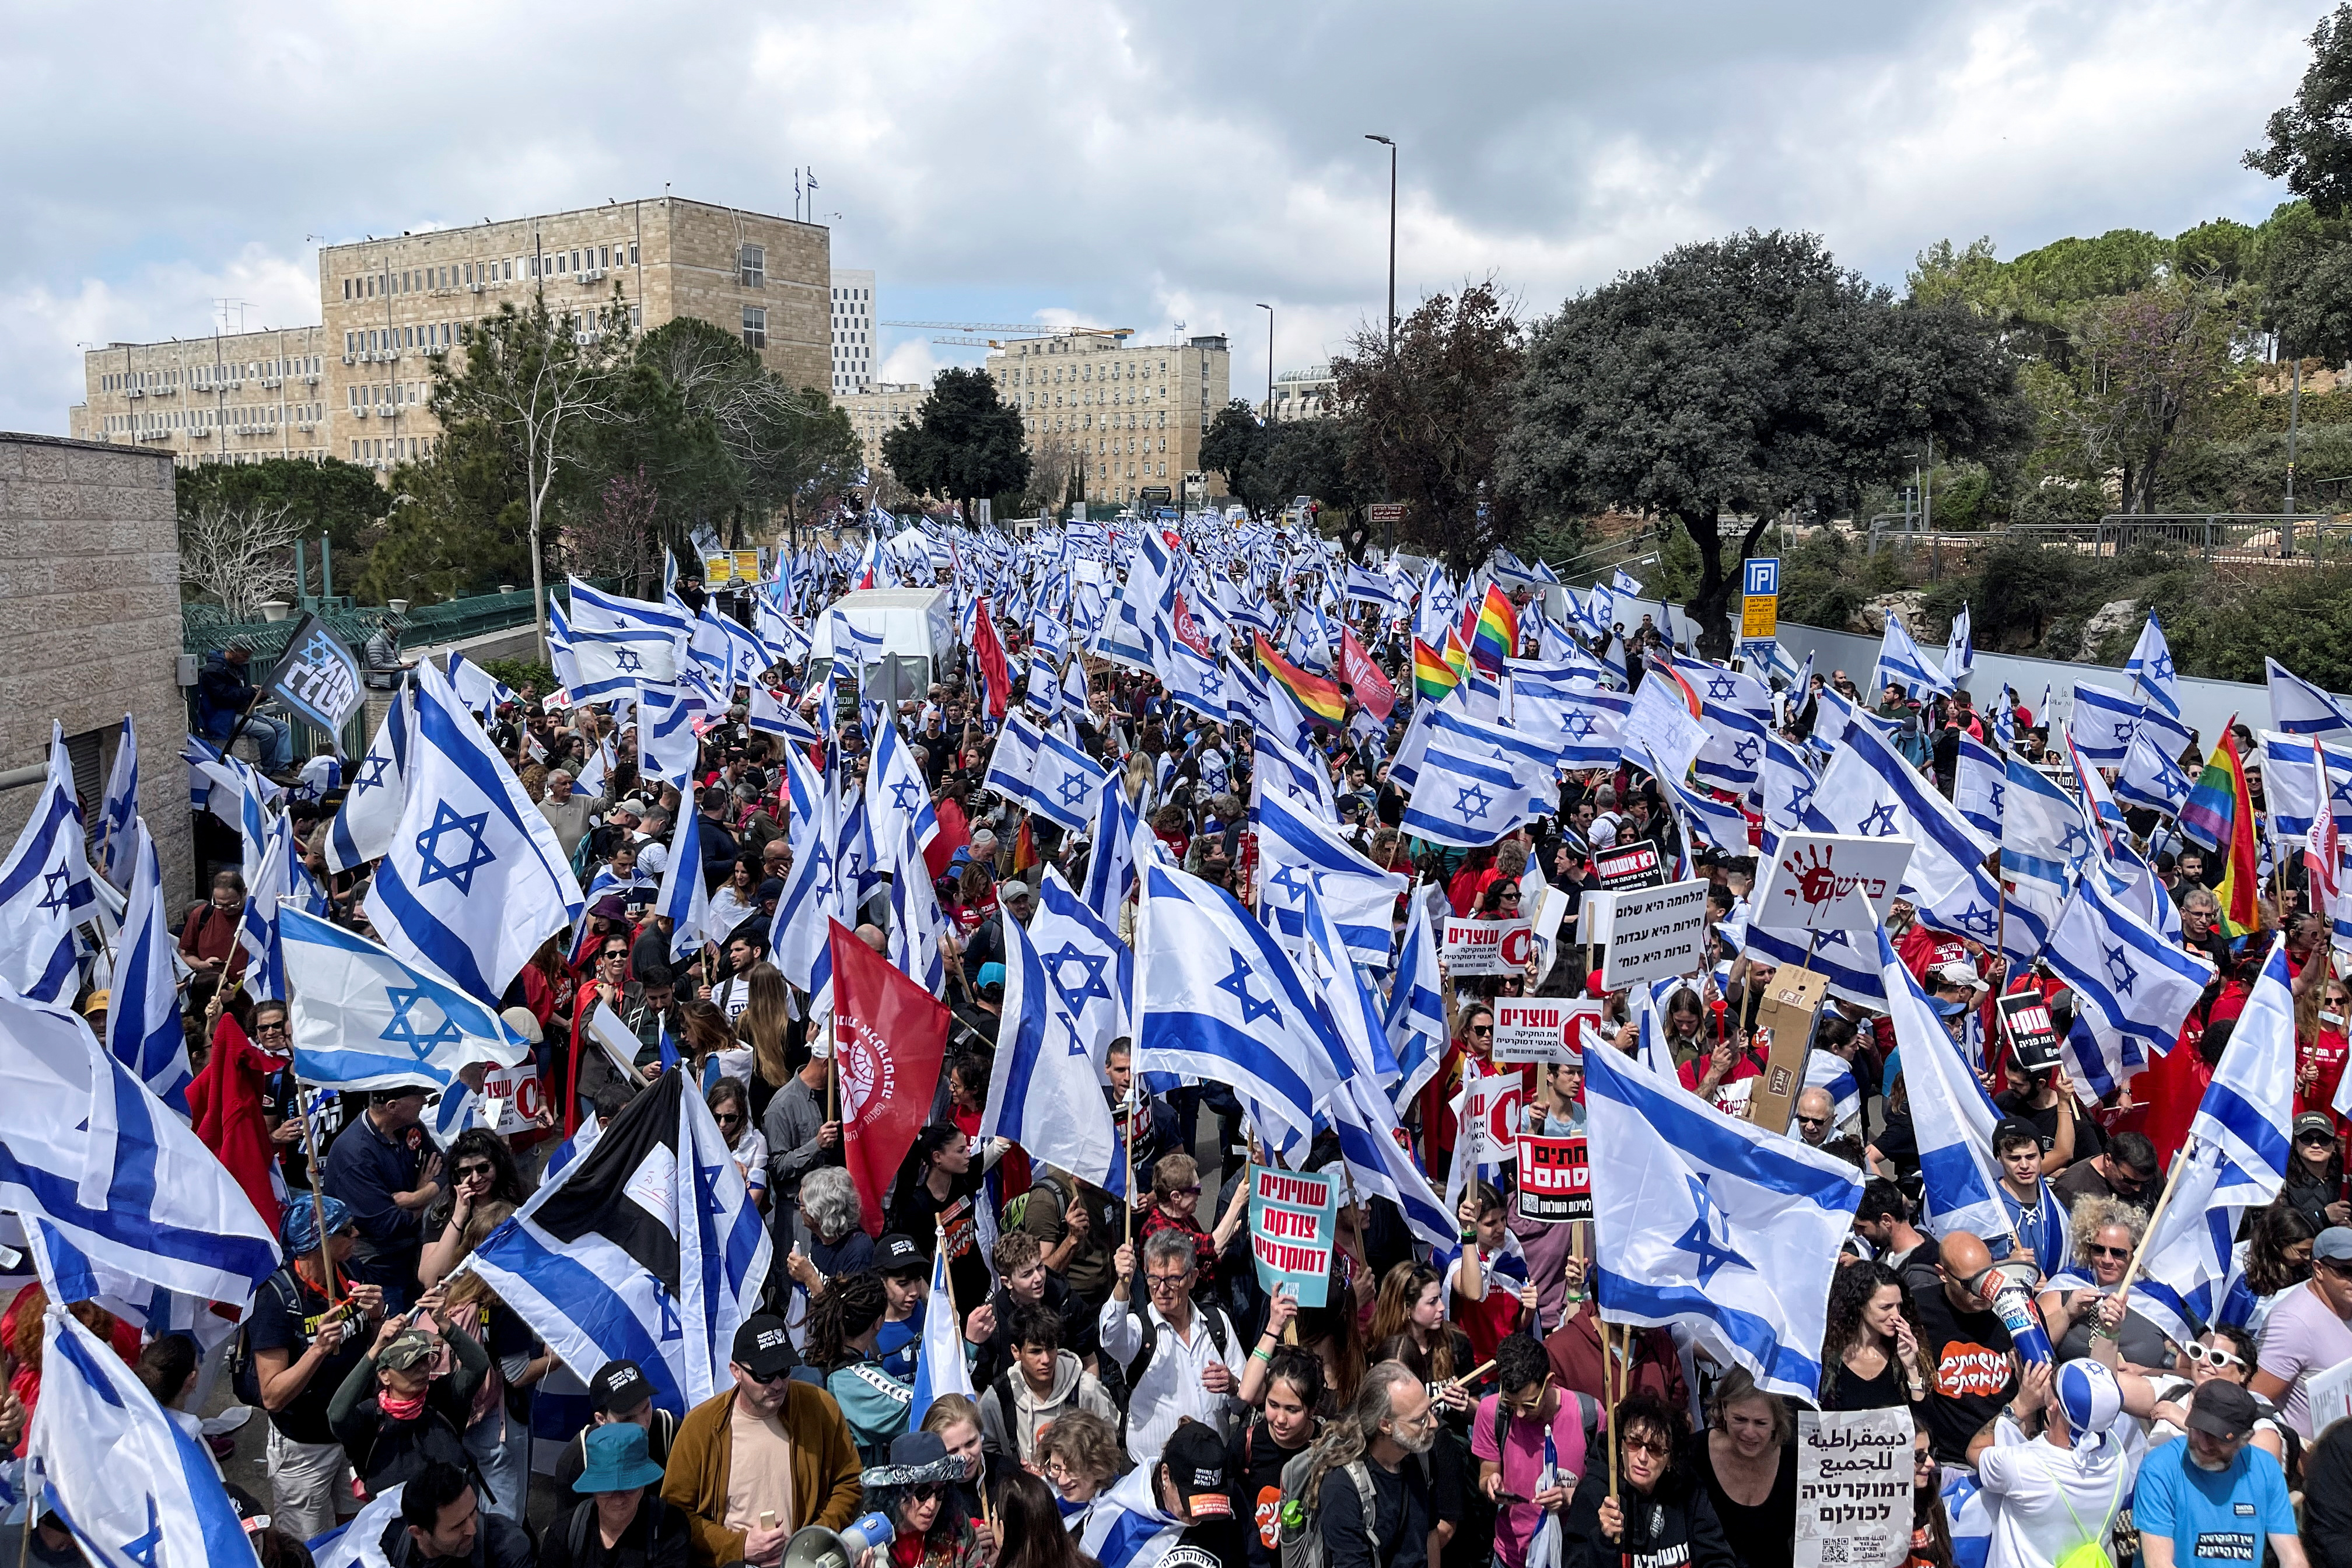 En medio de las masivas protestas, el presidente de Israel llamó a detener “inmediatamente” la reforma judicial que impulsa Netanyahu